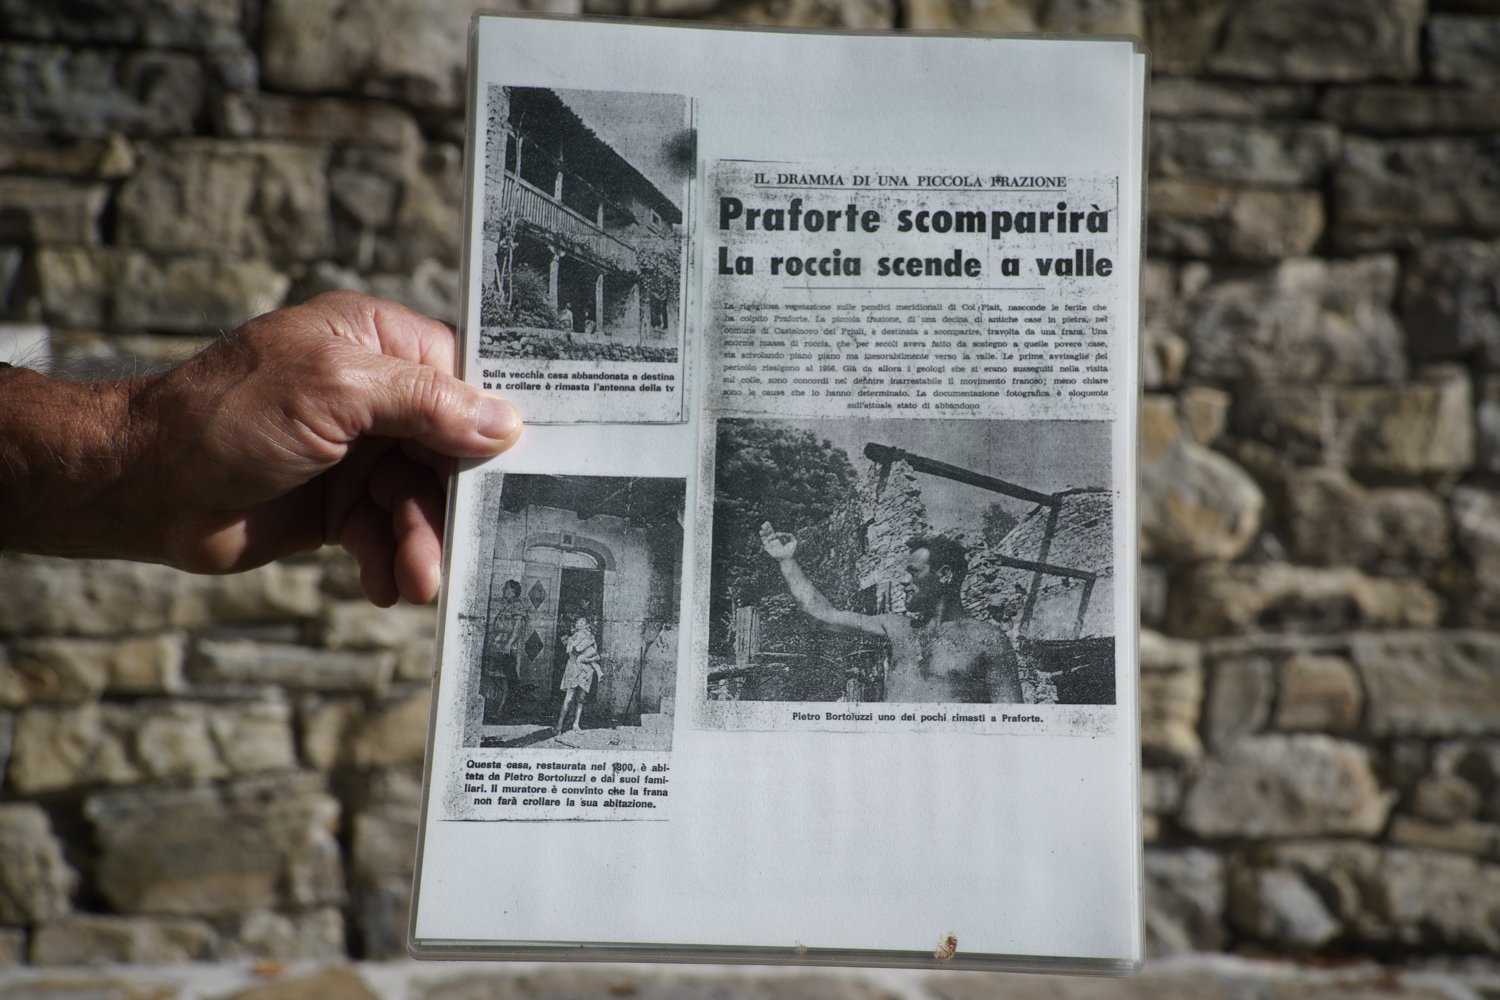  Articolo di giornale riporta la notizia dell’ordine di sgombero del borgo di Praforte avvenuto negli anni Sessanta. Praforte (Pordenone), 2023.Il borgo di Praforte, località di Castelnovo del Friuli, si trova sulle pendici orientali del Monte Ciaurl